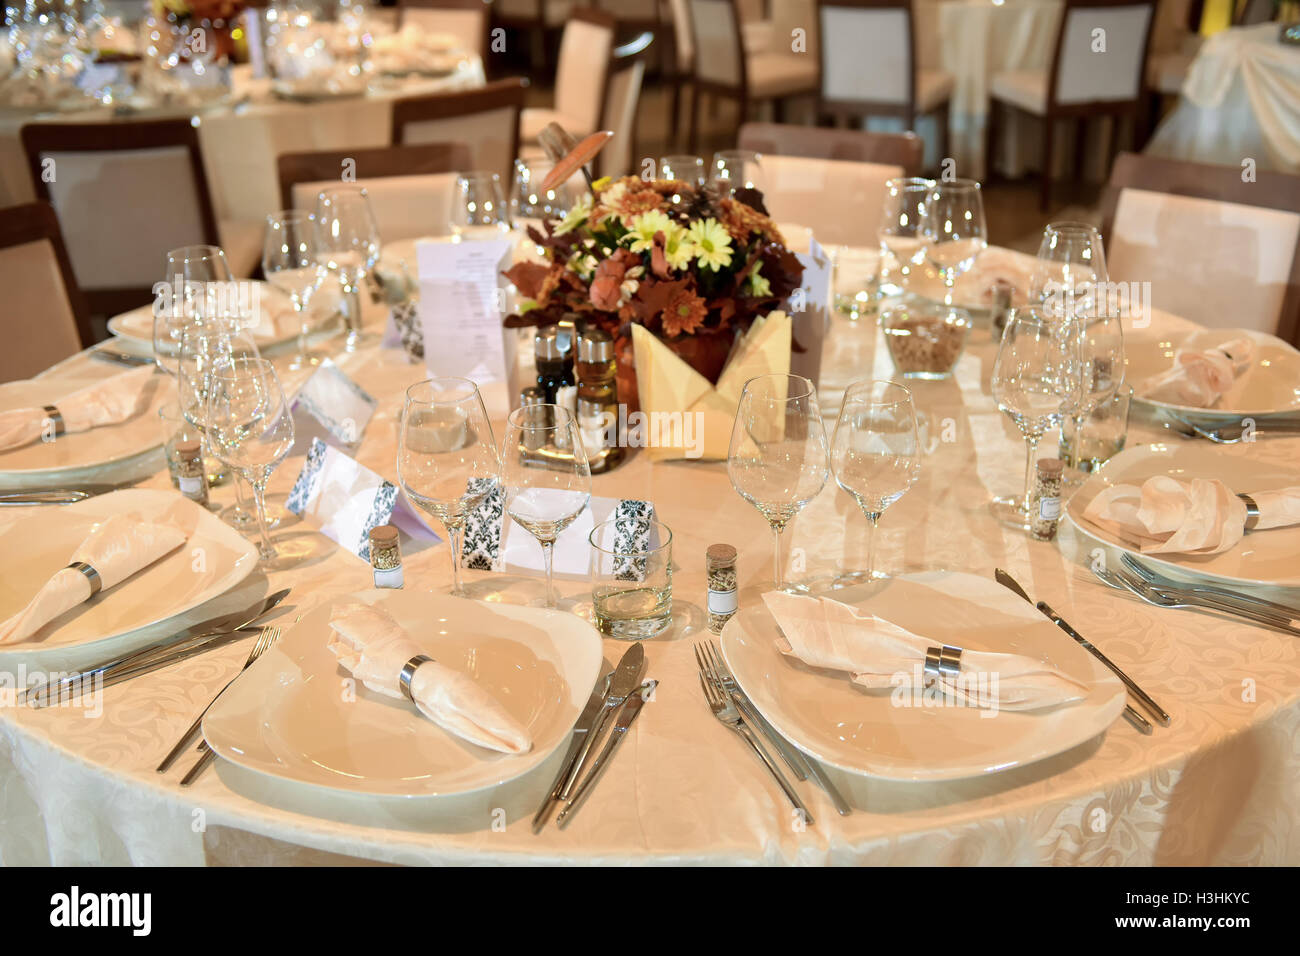 Table de mariage de configuration avec la plaque, fourchette, couteau et verres Banque D'Images